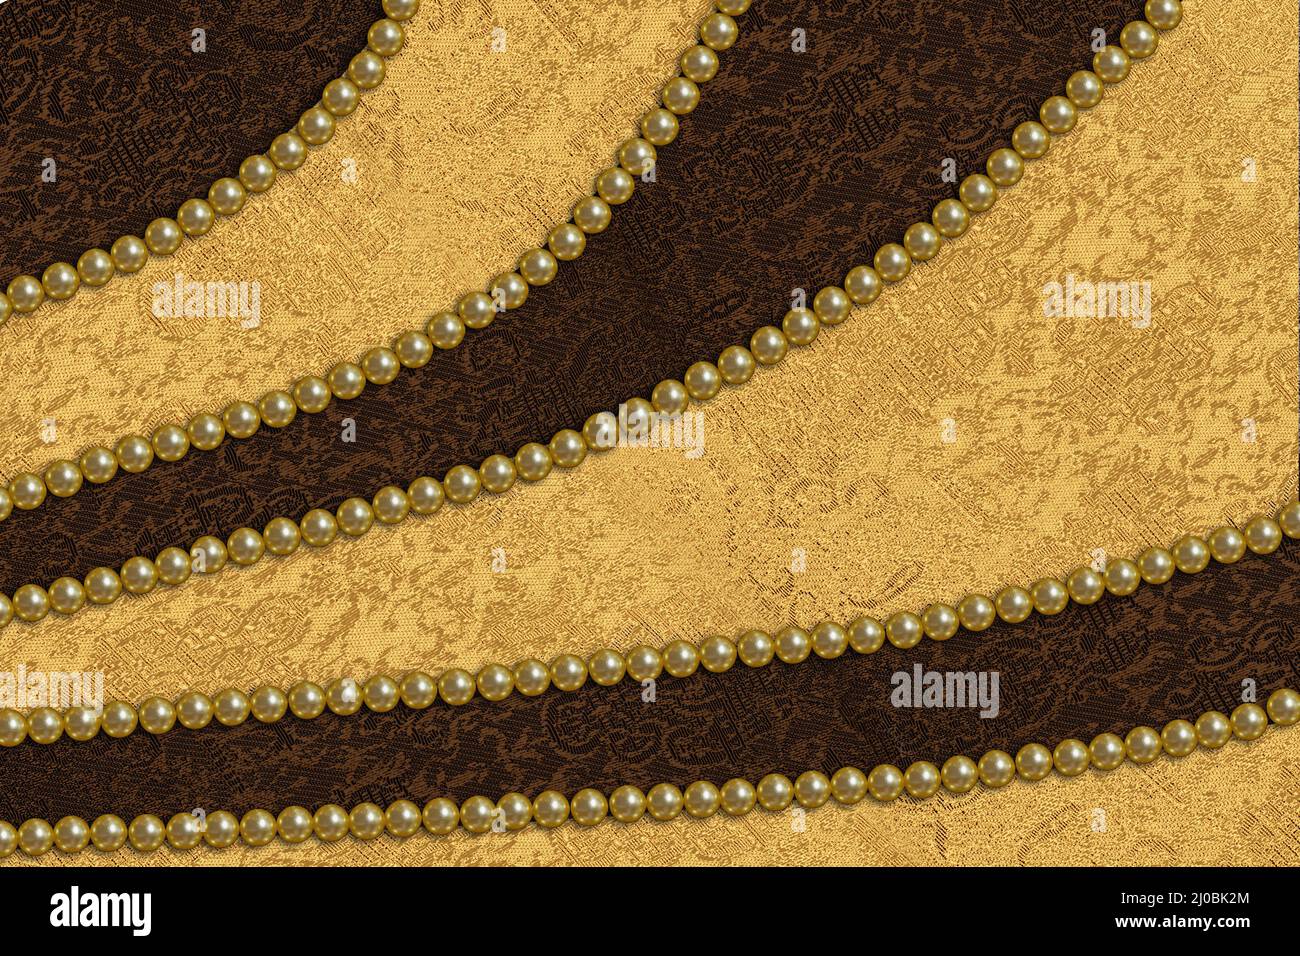 Abstrakter Hintergrund mit goldenem und braunem Satinstoff und Perlen Stockfoto